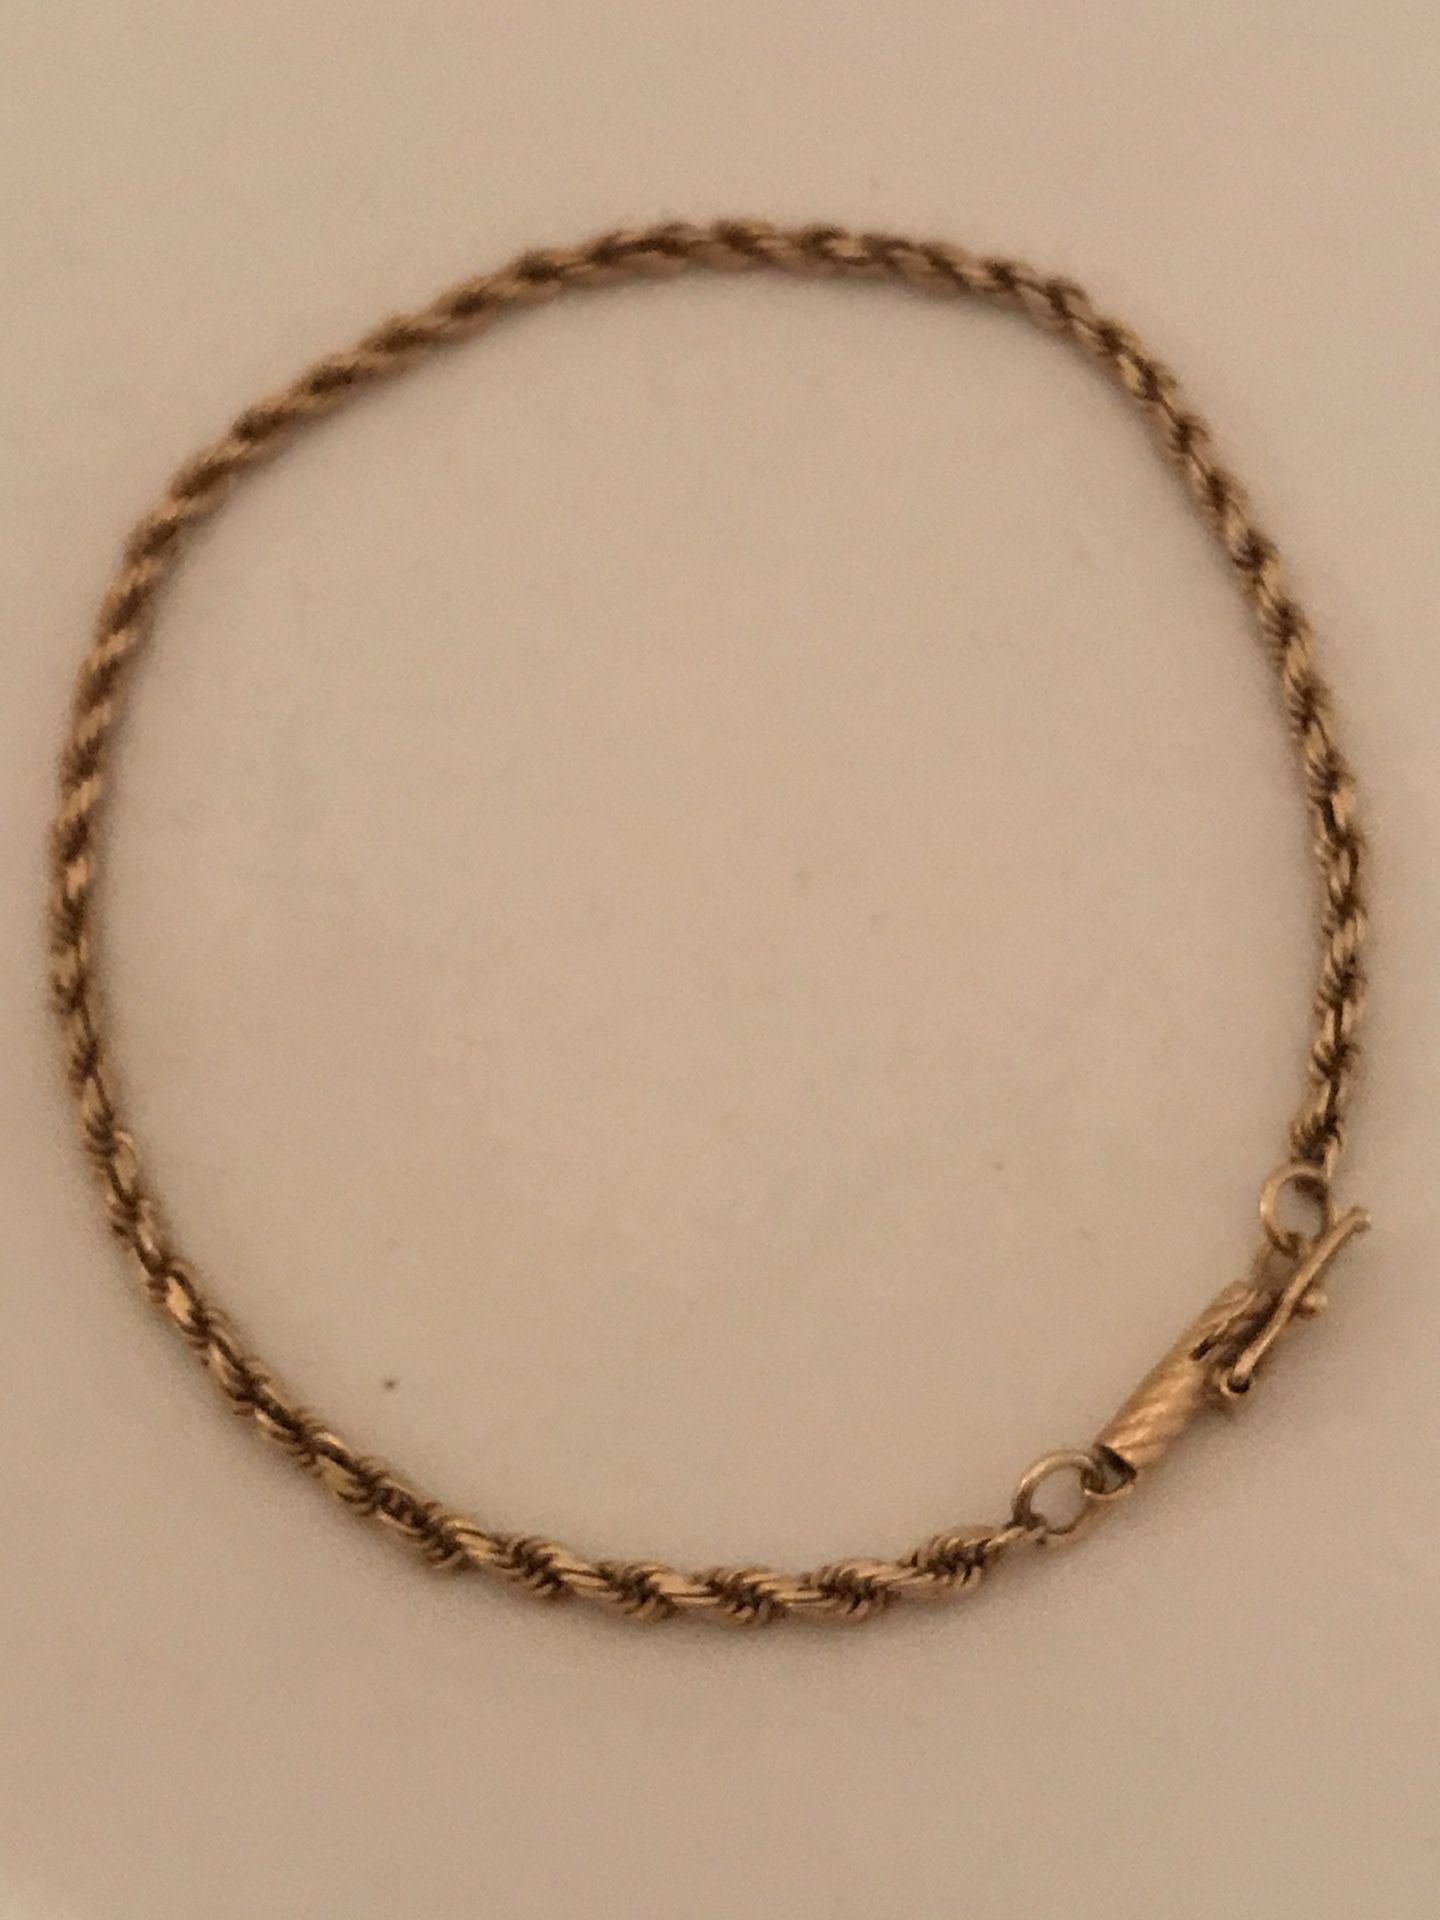 Solid 14k 7” rope bracelet